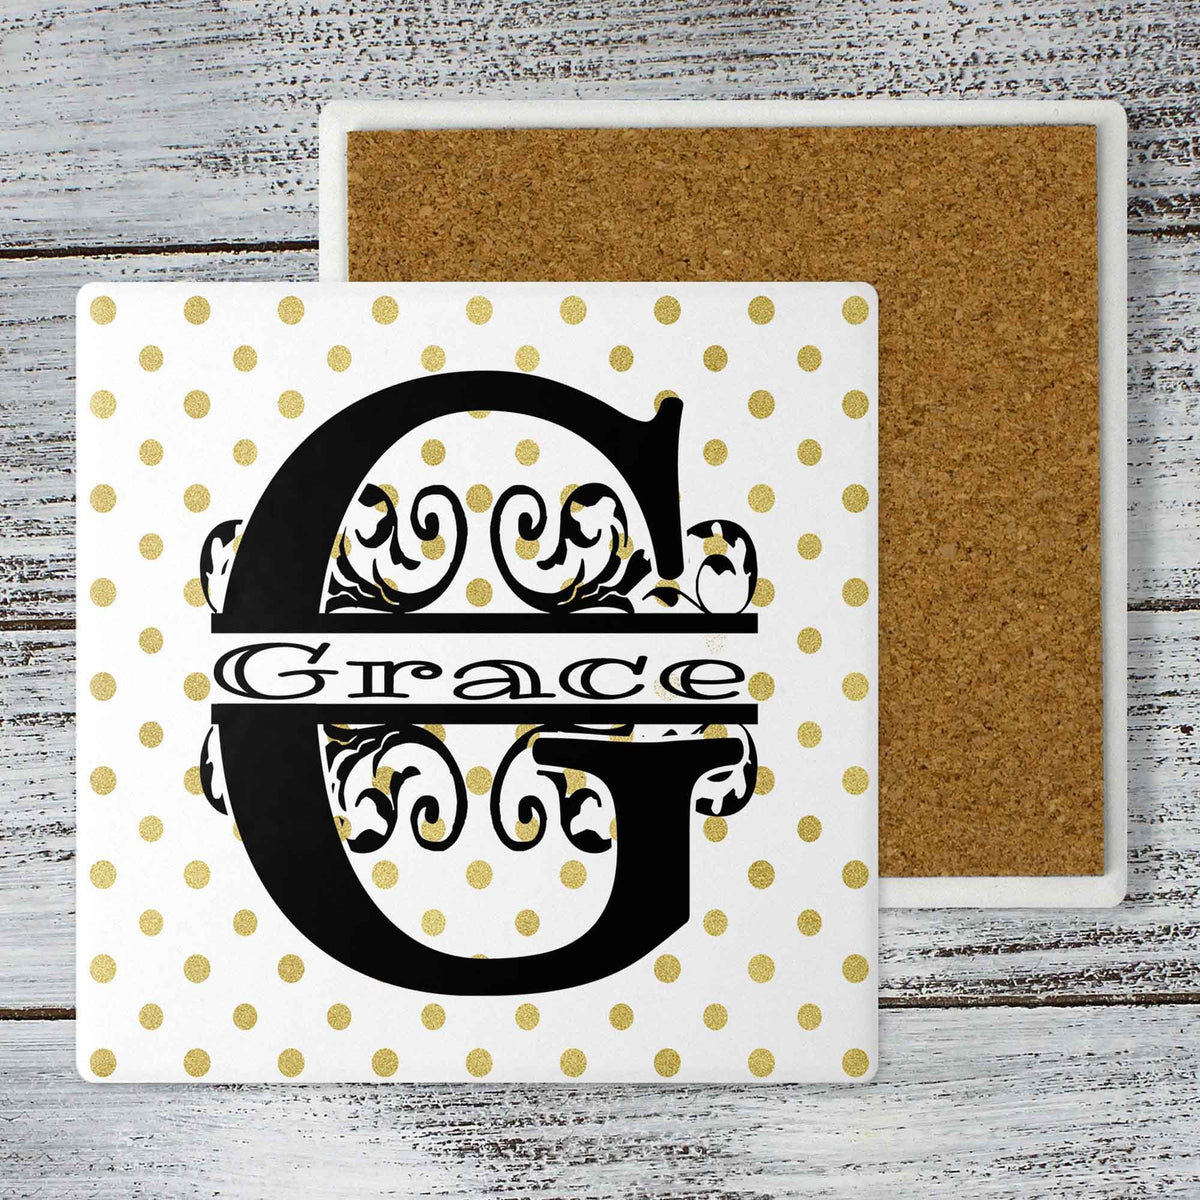 Personalized Coasters | Custom Stone Coaster Set | Gold Polka Dot | Set of 4